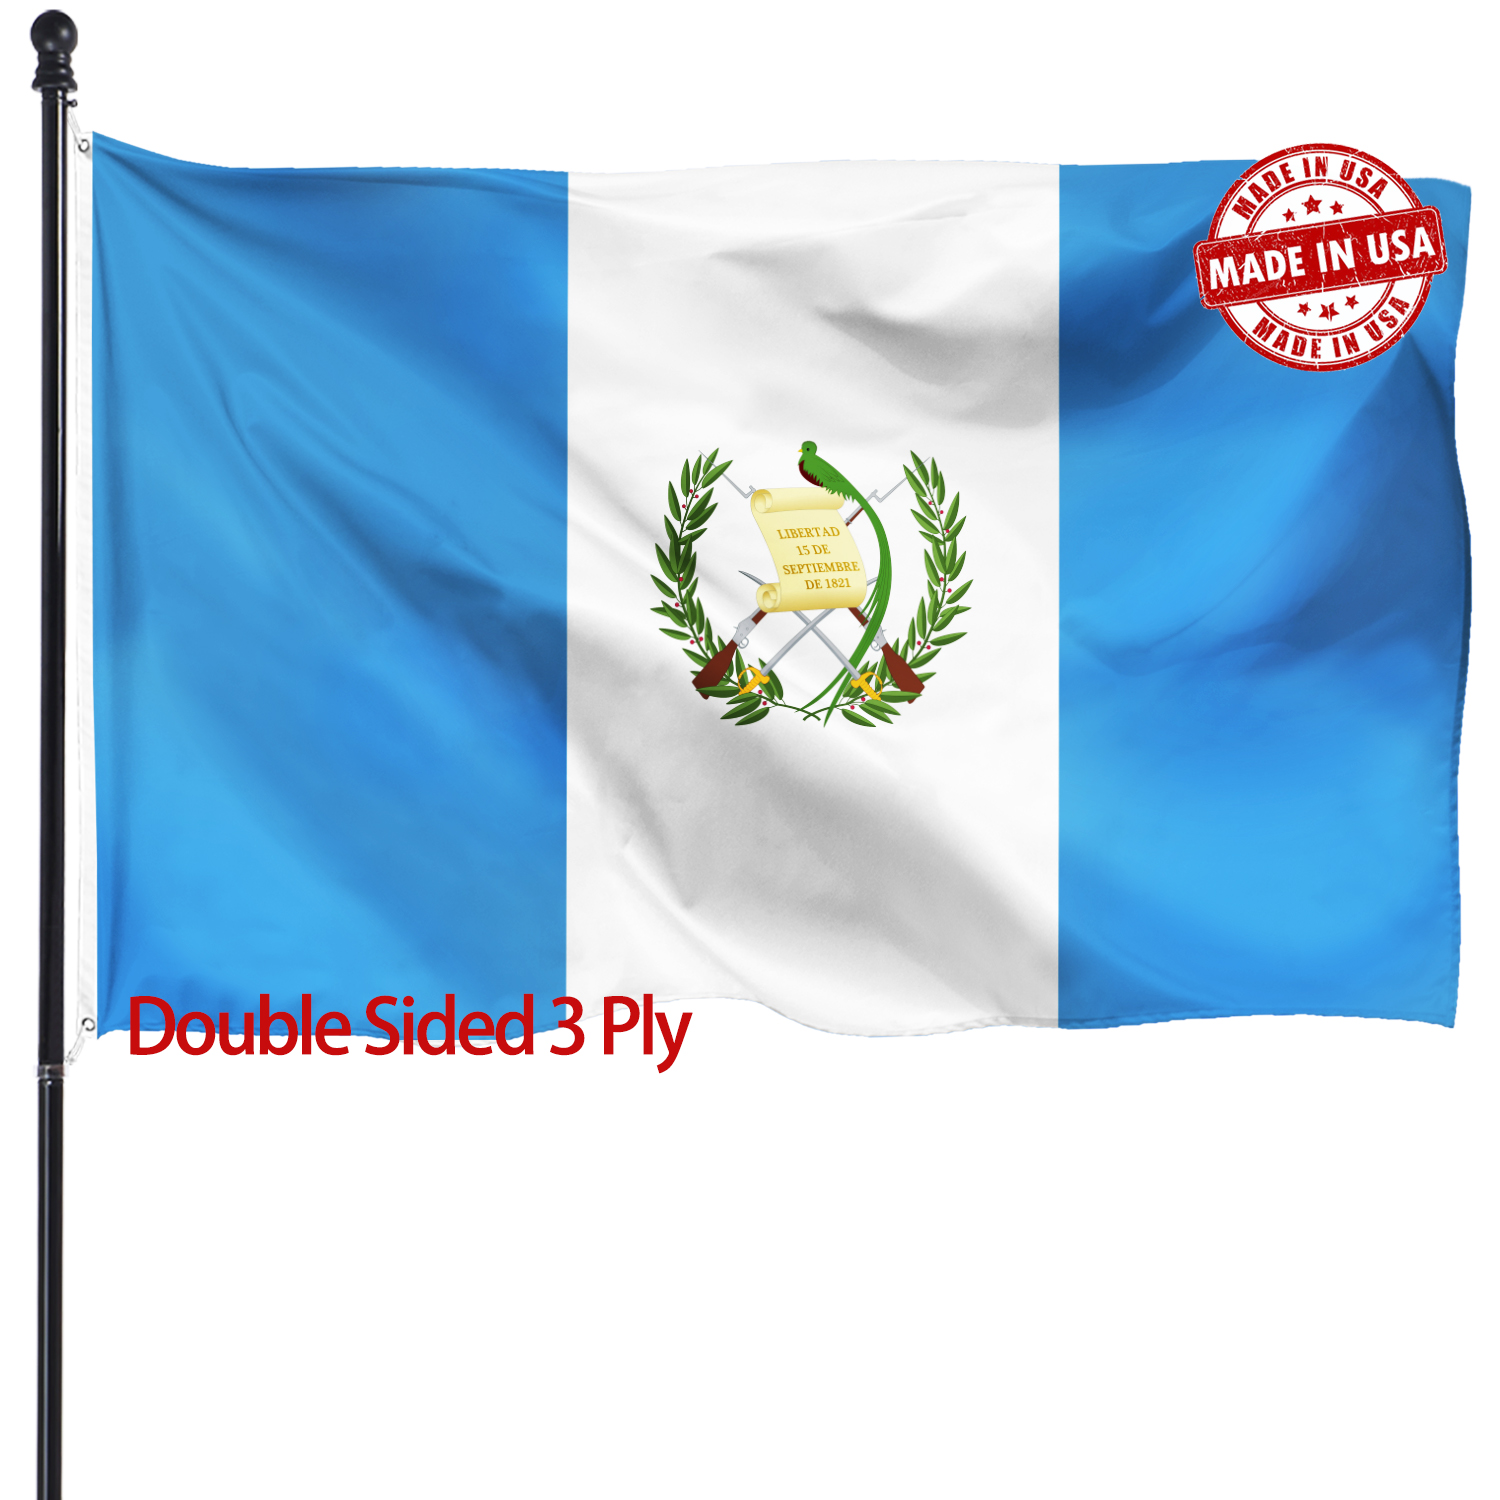 危地马拉旗帜 3x5 厚重 亚马逊专供